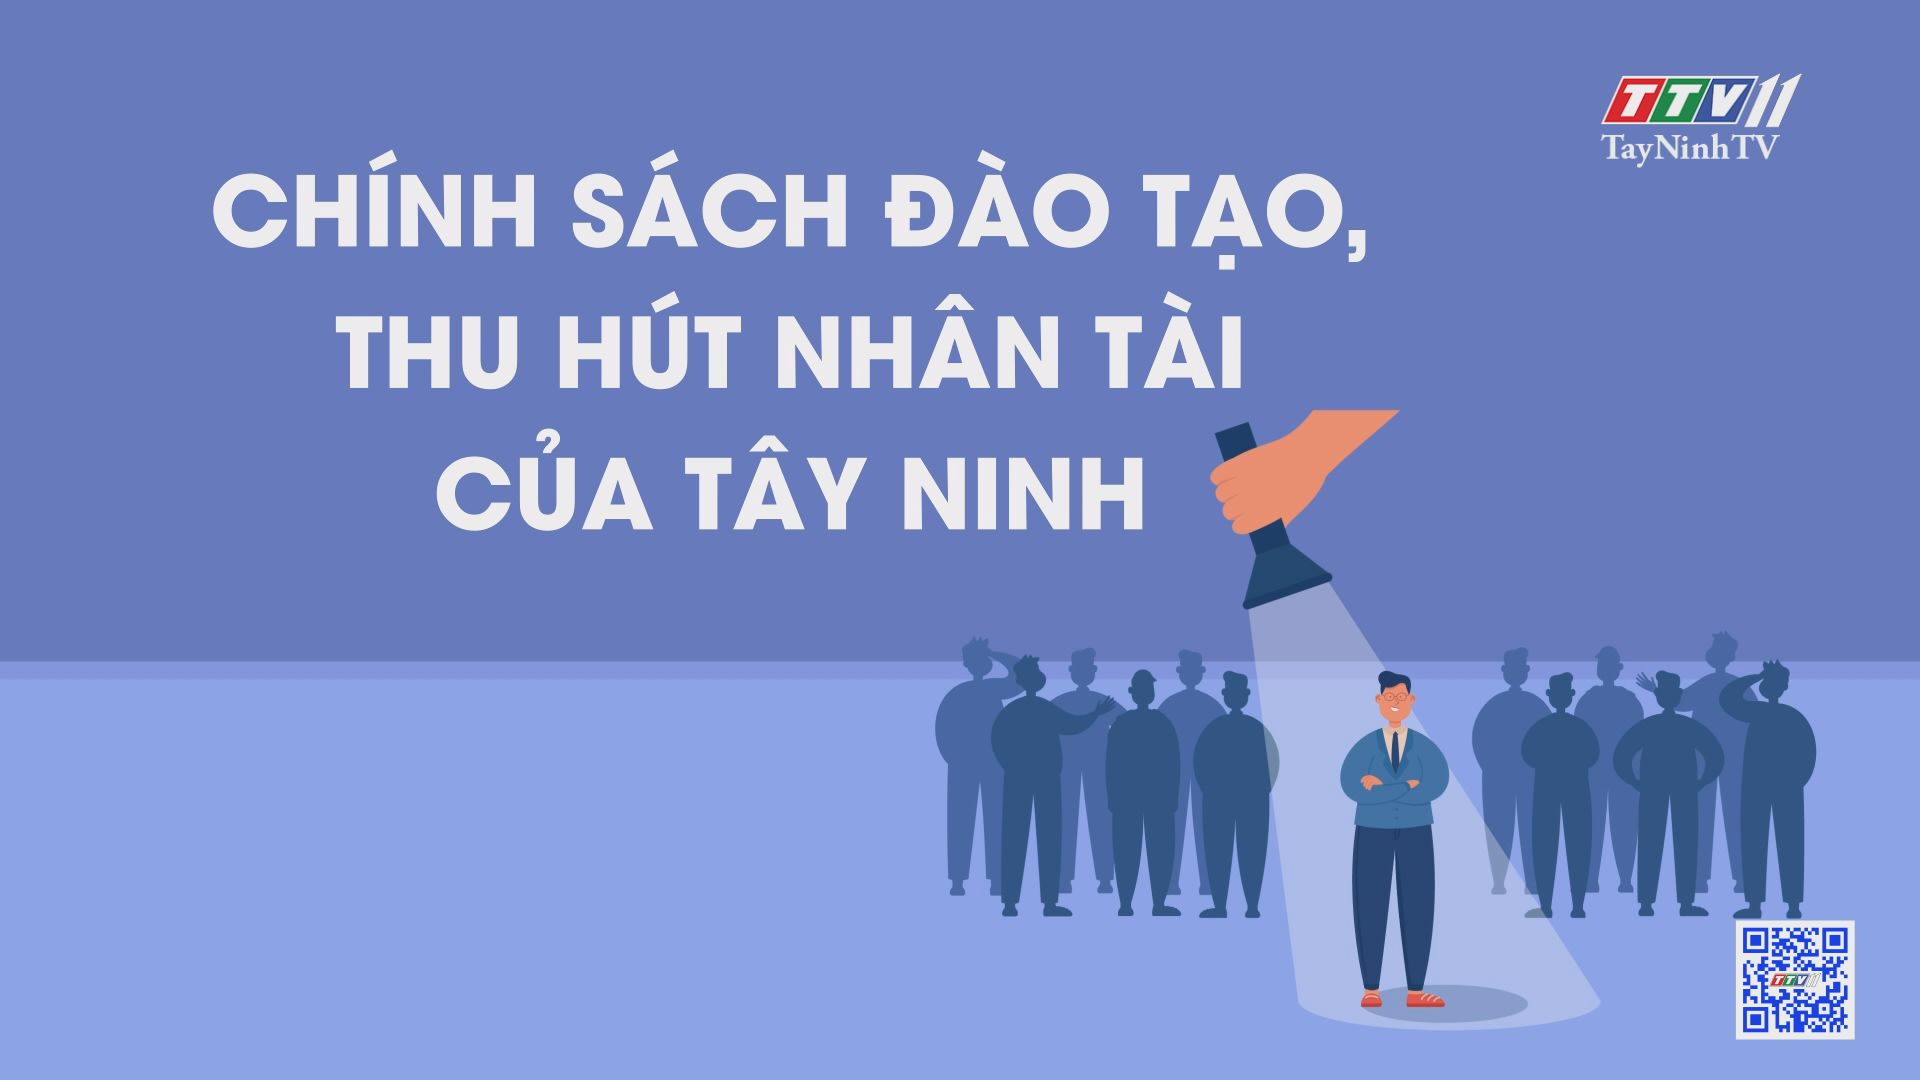 Chính sách đào tạo thu hút nhân tài của Tây Ninh | TIẾNG NÓI CỬ TRI | TayNinhTV